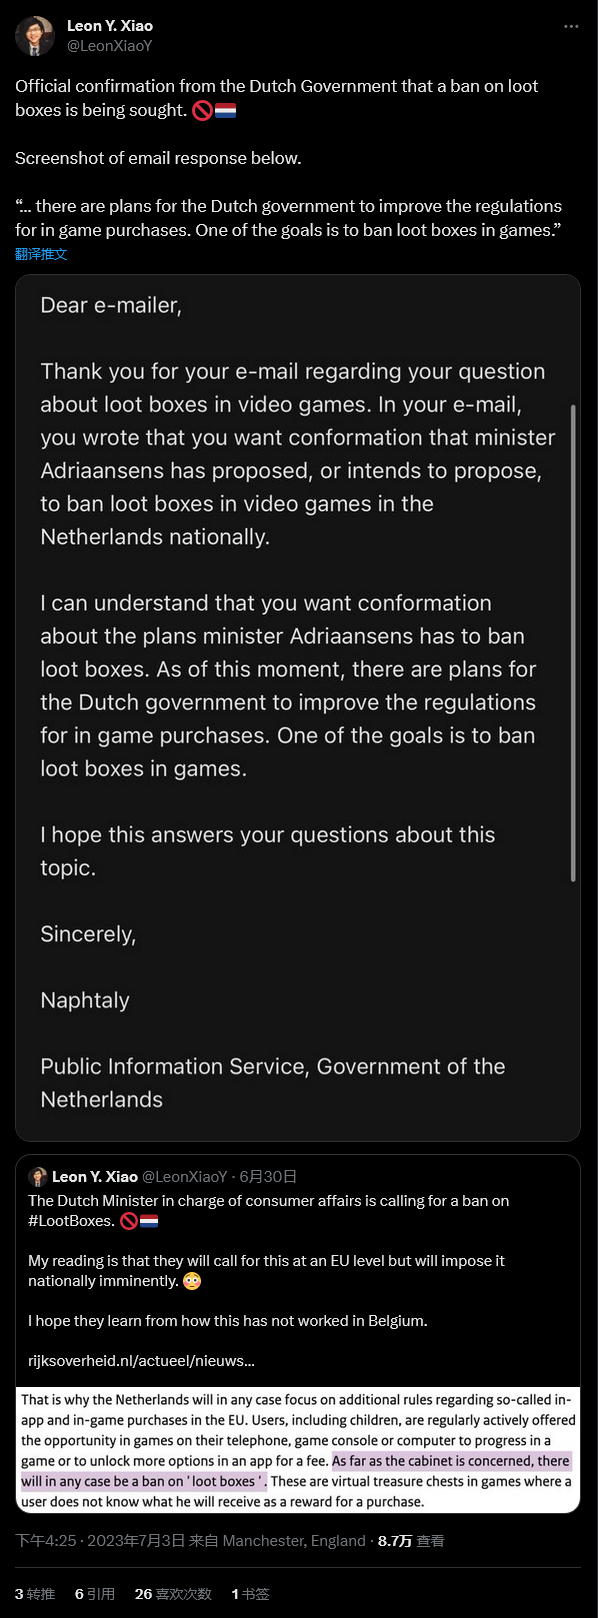 【PC游戏】荷兰官方正寻求彻底封禁游戏内战利品箱机制-第1张